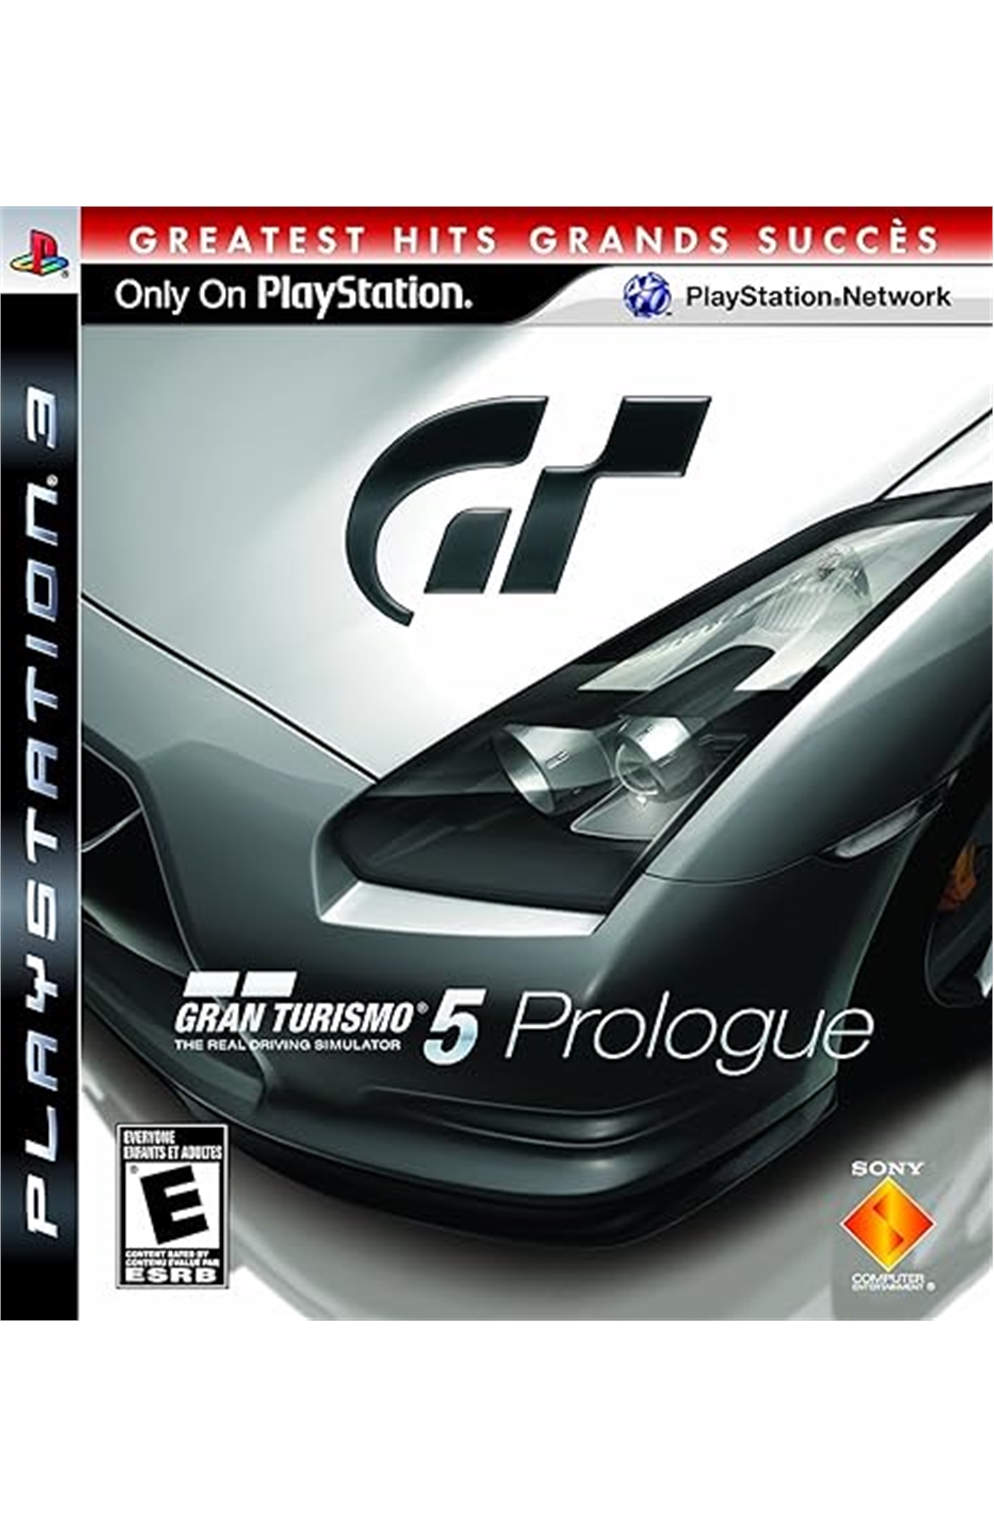 Playstation 3 Ps3 Gran Turismo 5 Prologue